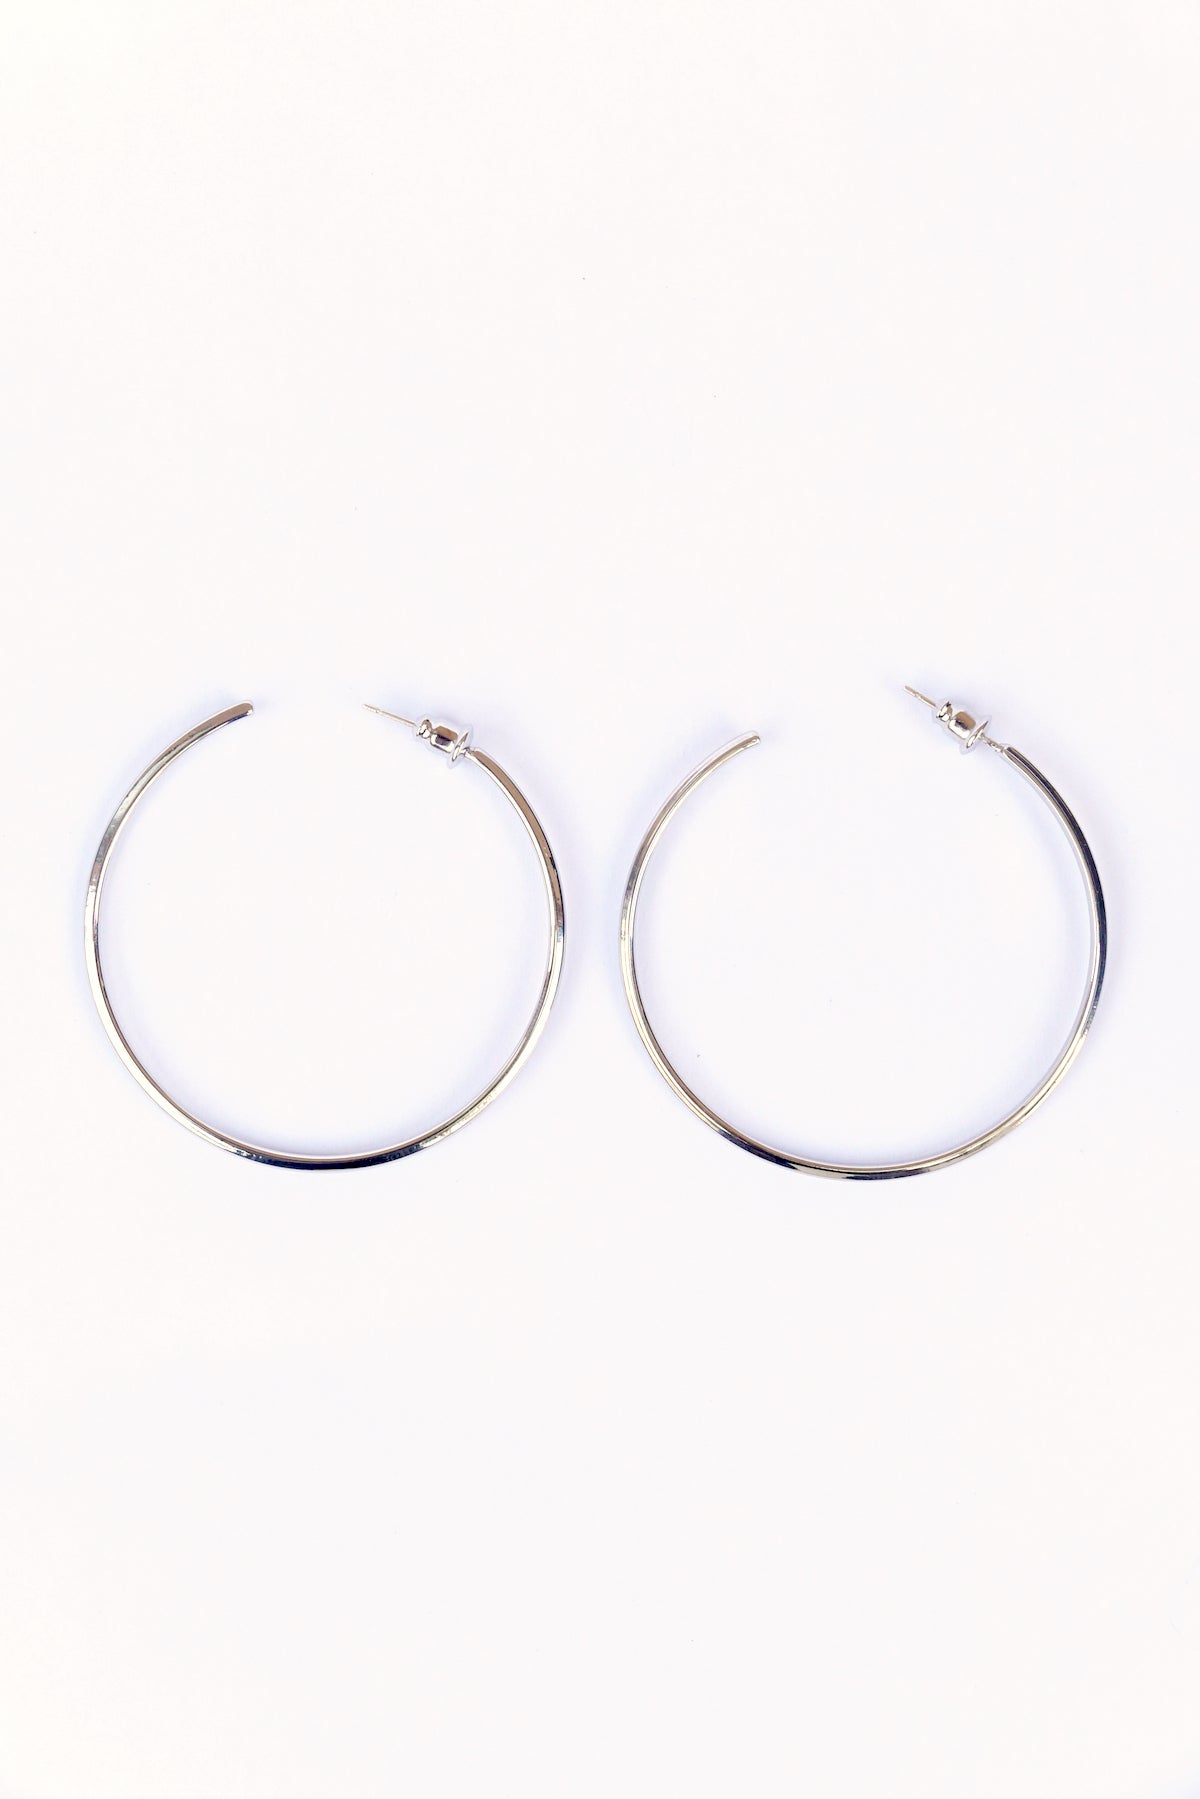 Silver Modern hoop earrings on a white backdrop